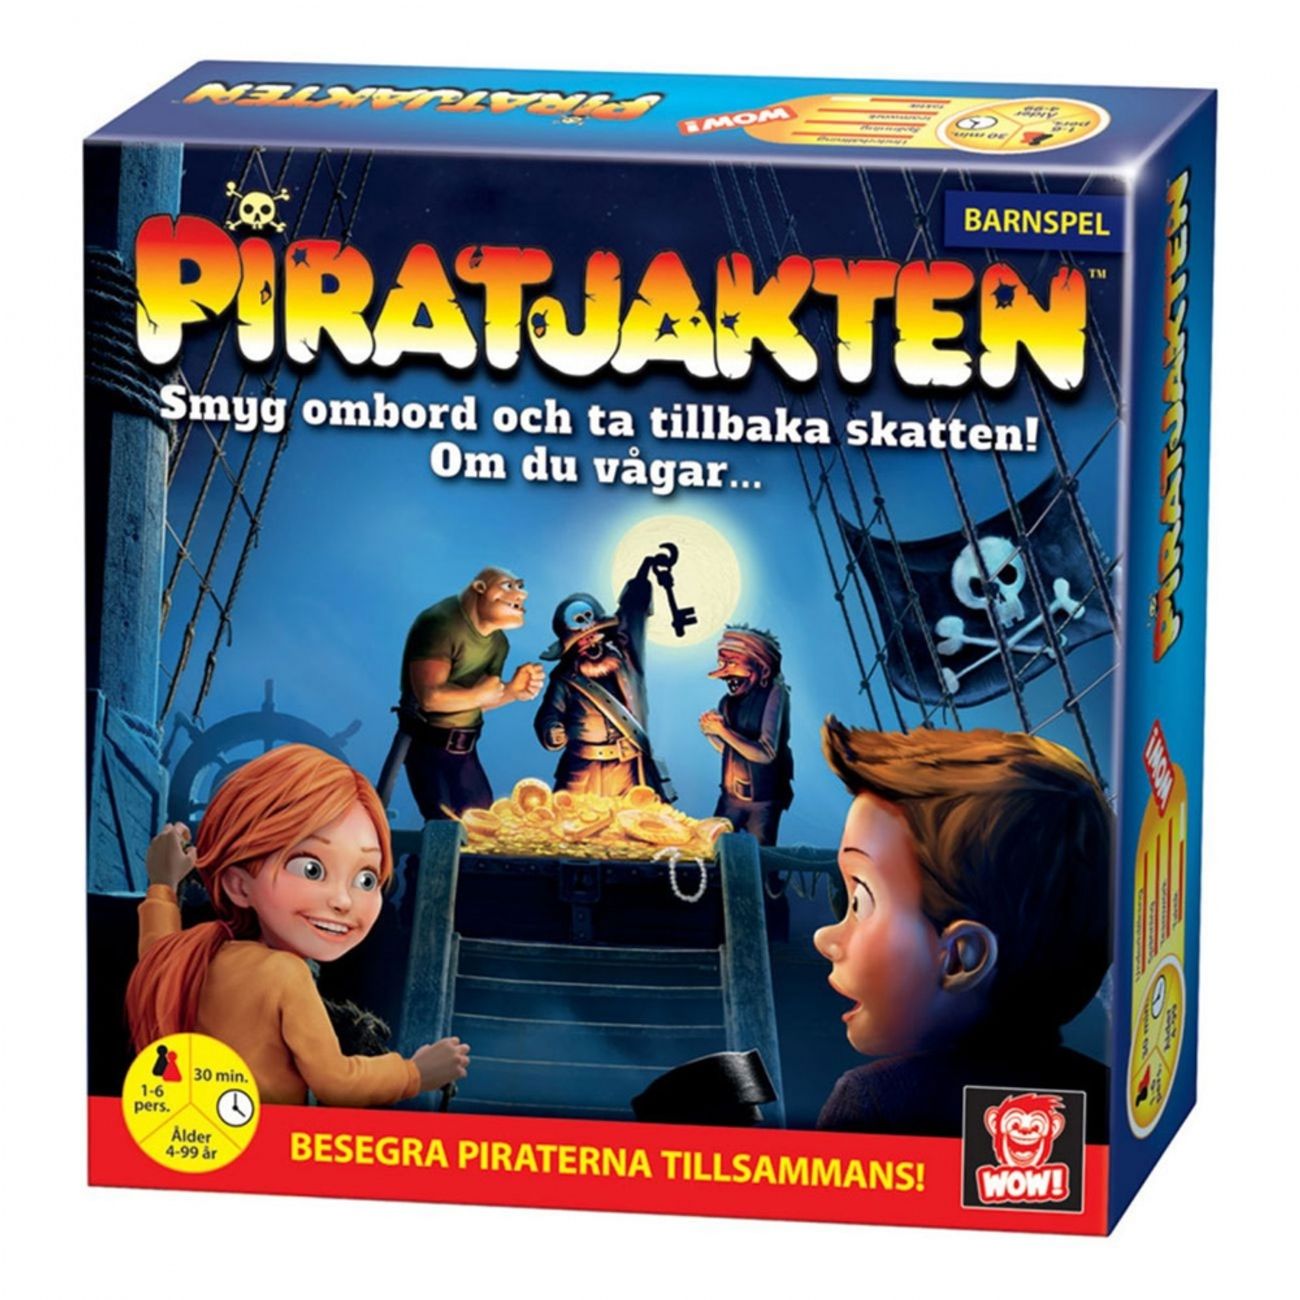 piratjakten-barnspel-80400-1